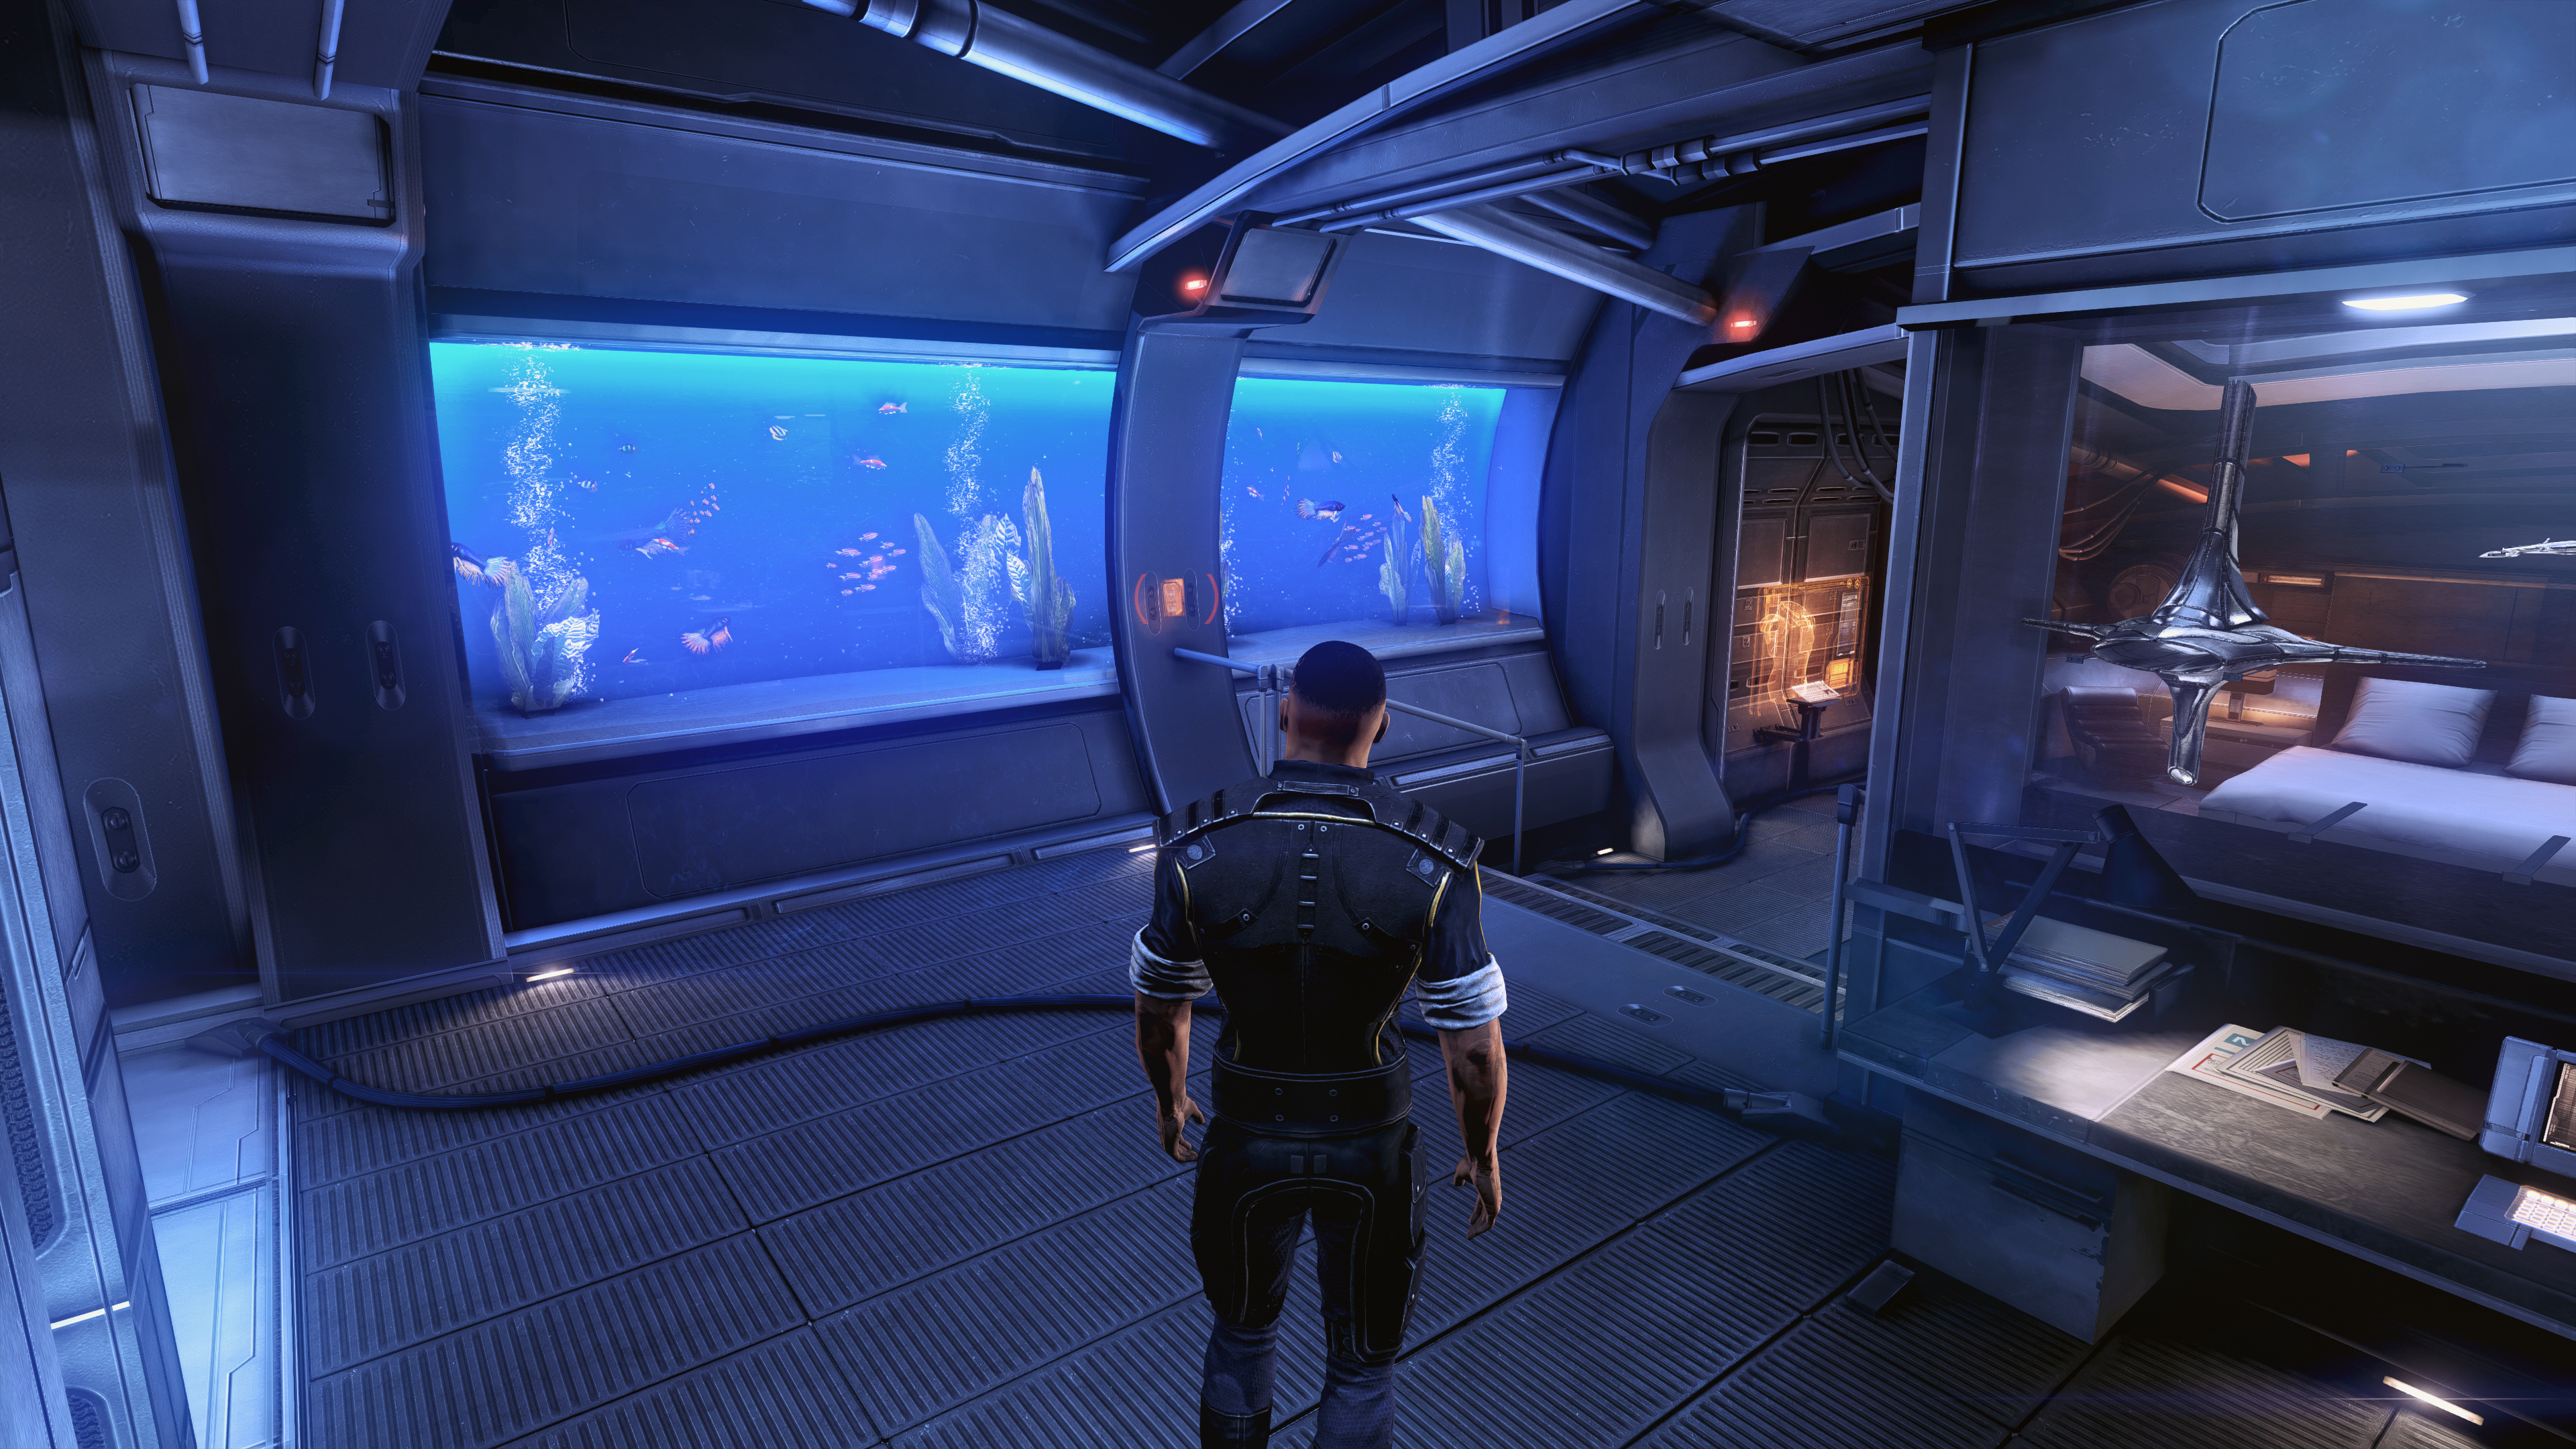 Mass Effect 3: Citadel, Lights and effects, Legendary edition, Nexus mods, 3840x2160 4K Desktop